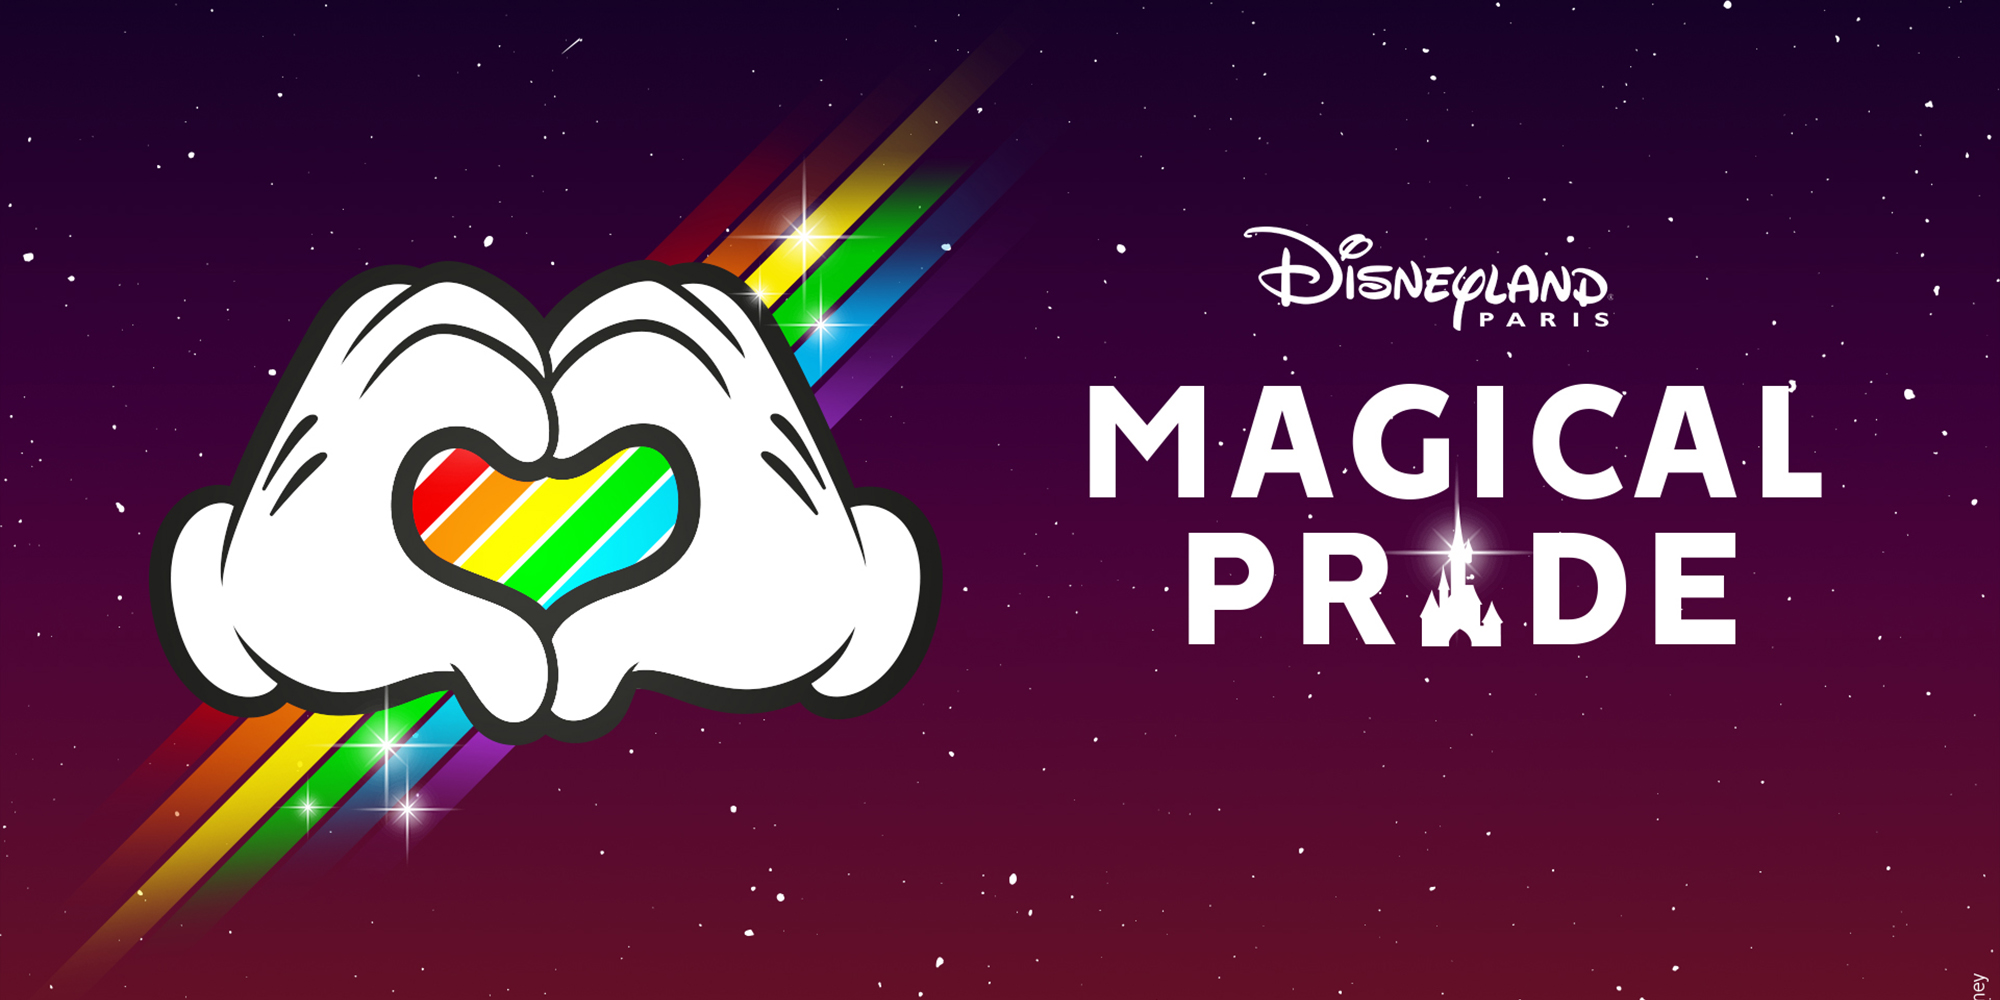 magical Pride at Disneyland Paris